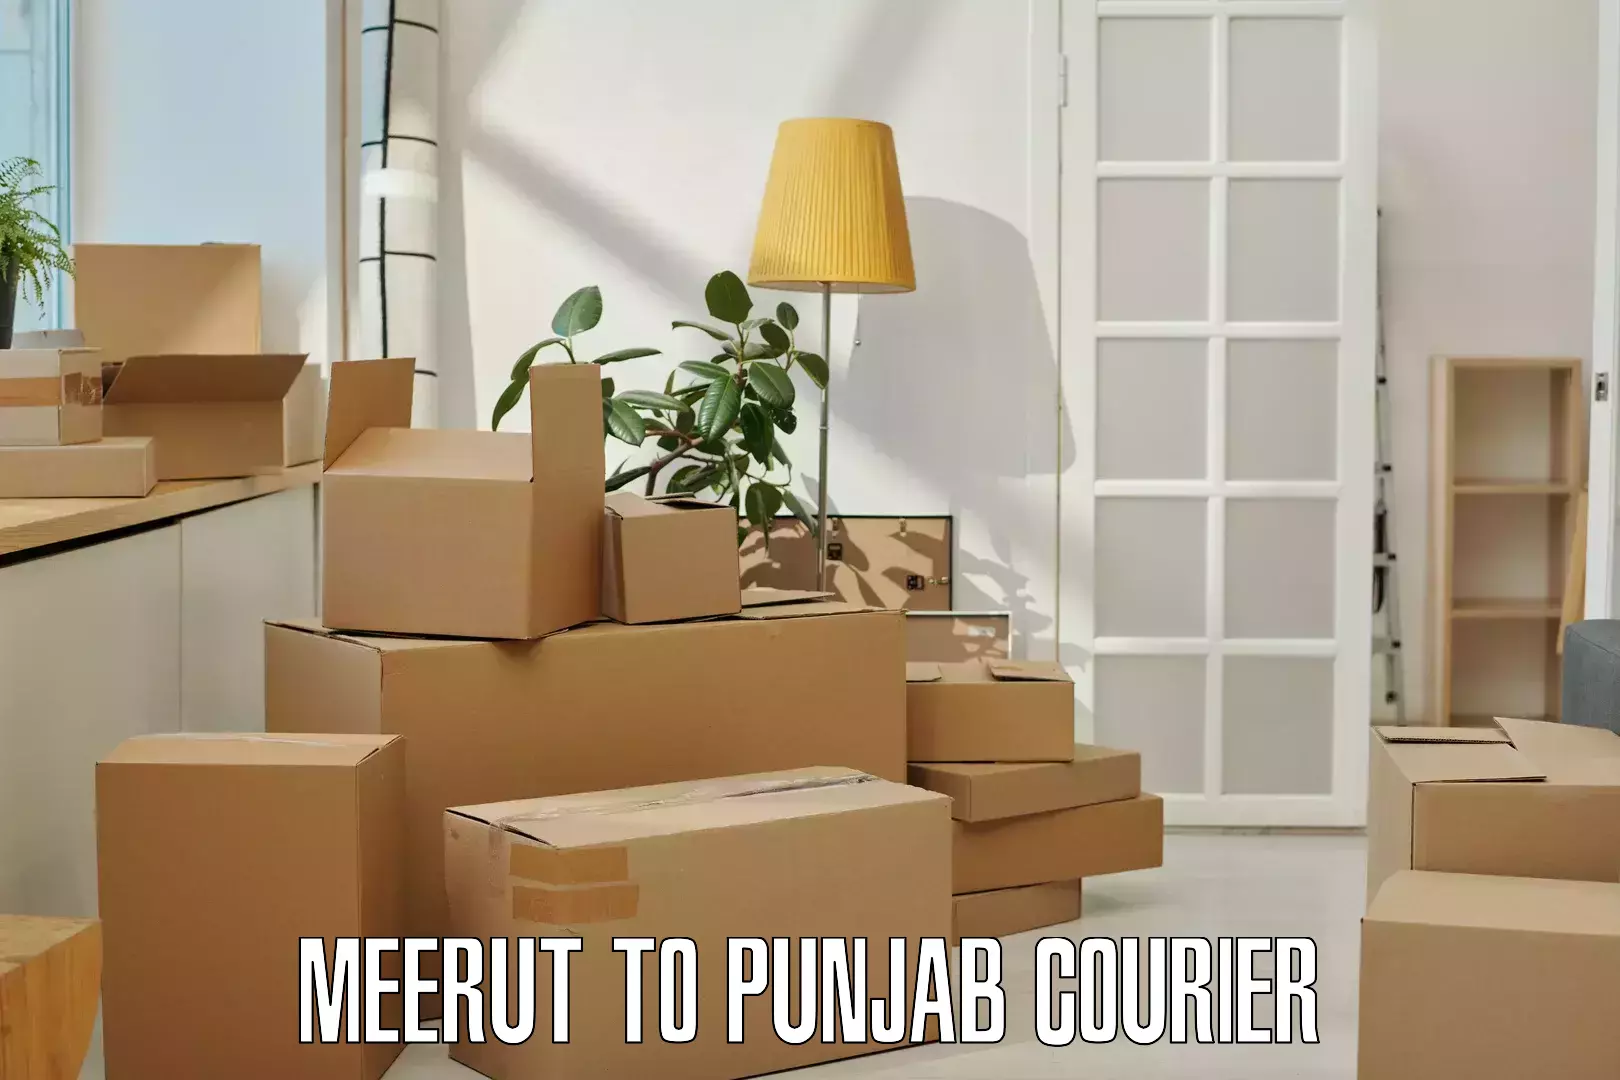 Efficient courier operations Meerut to Zirakpur